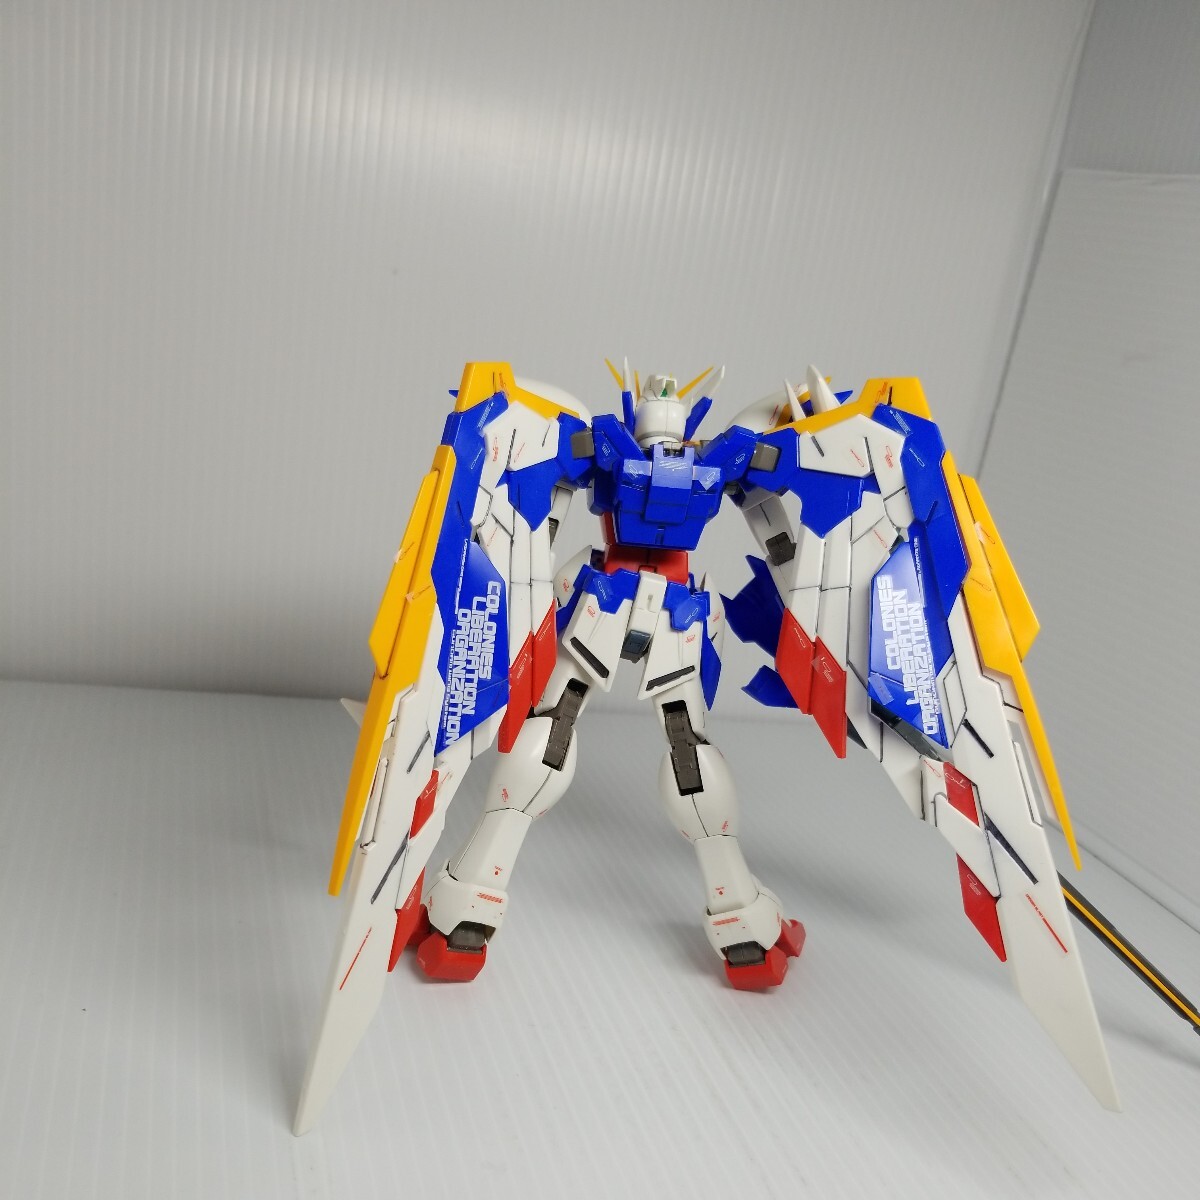 R-150g 5/8 MG Wing Gundam включение в покупку возможно gun pra Junk 